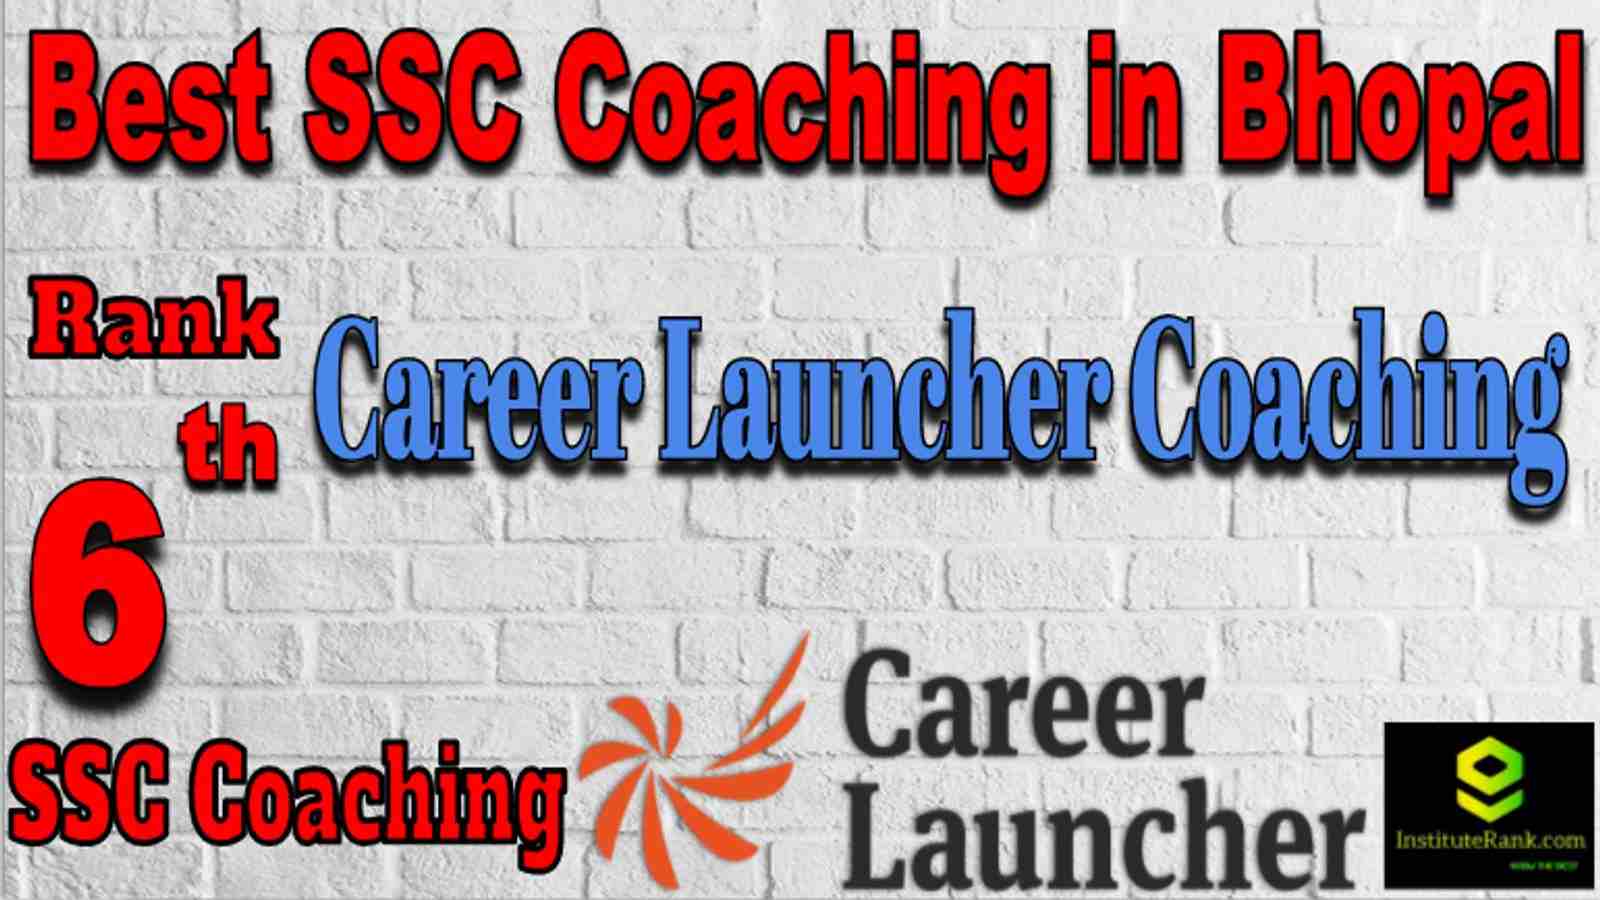 Rank 6 Best SSC Coaching in Bhopal